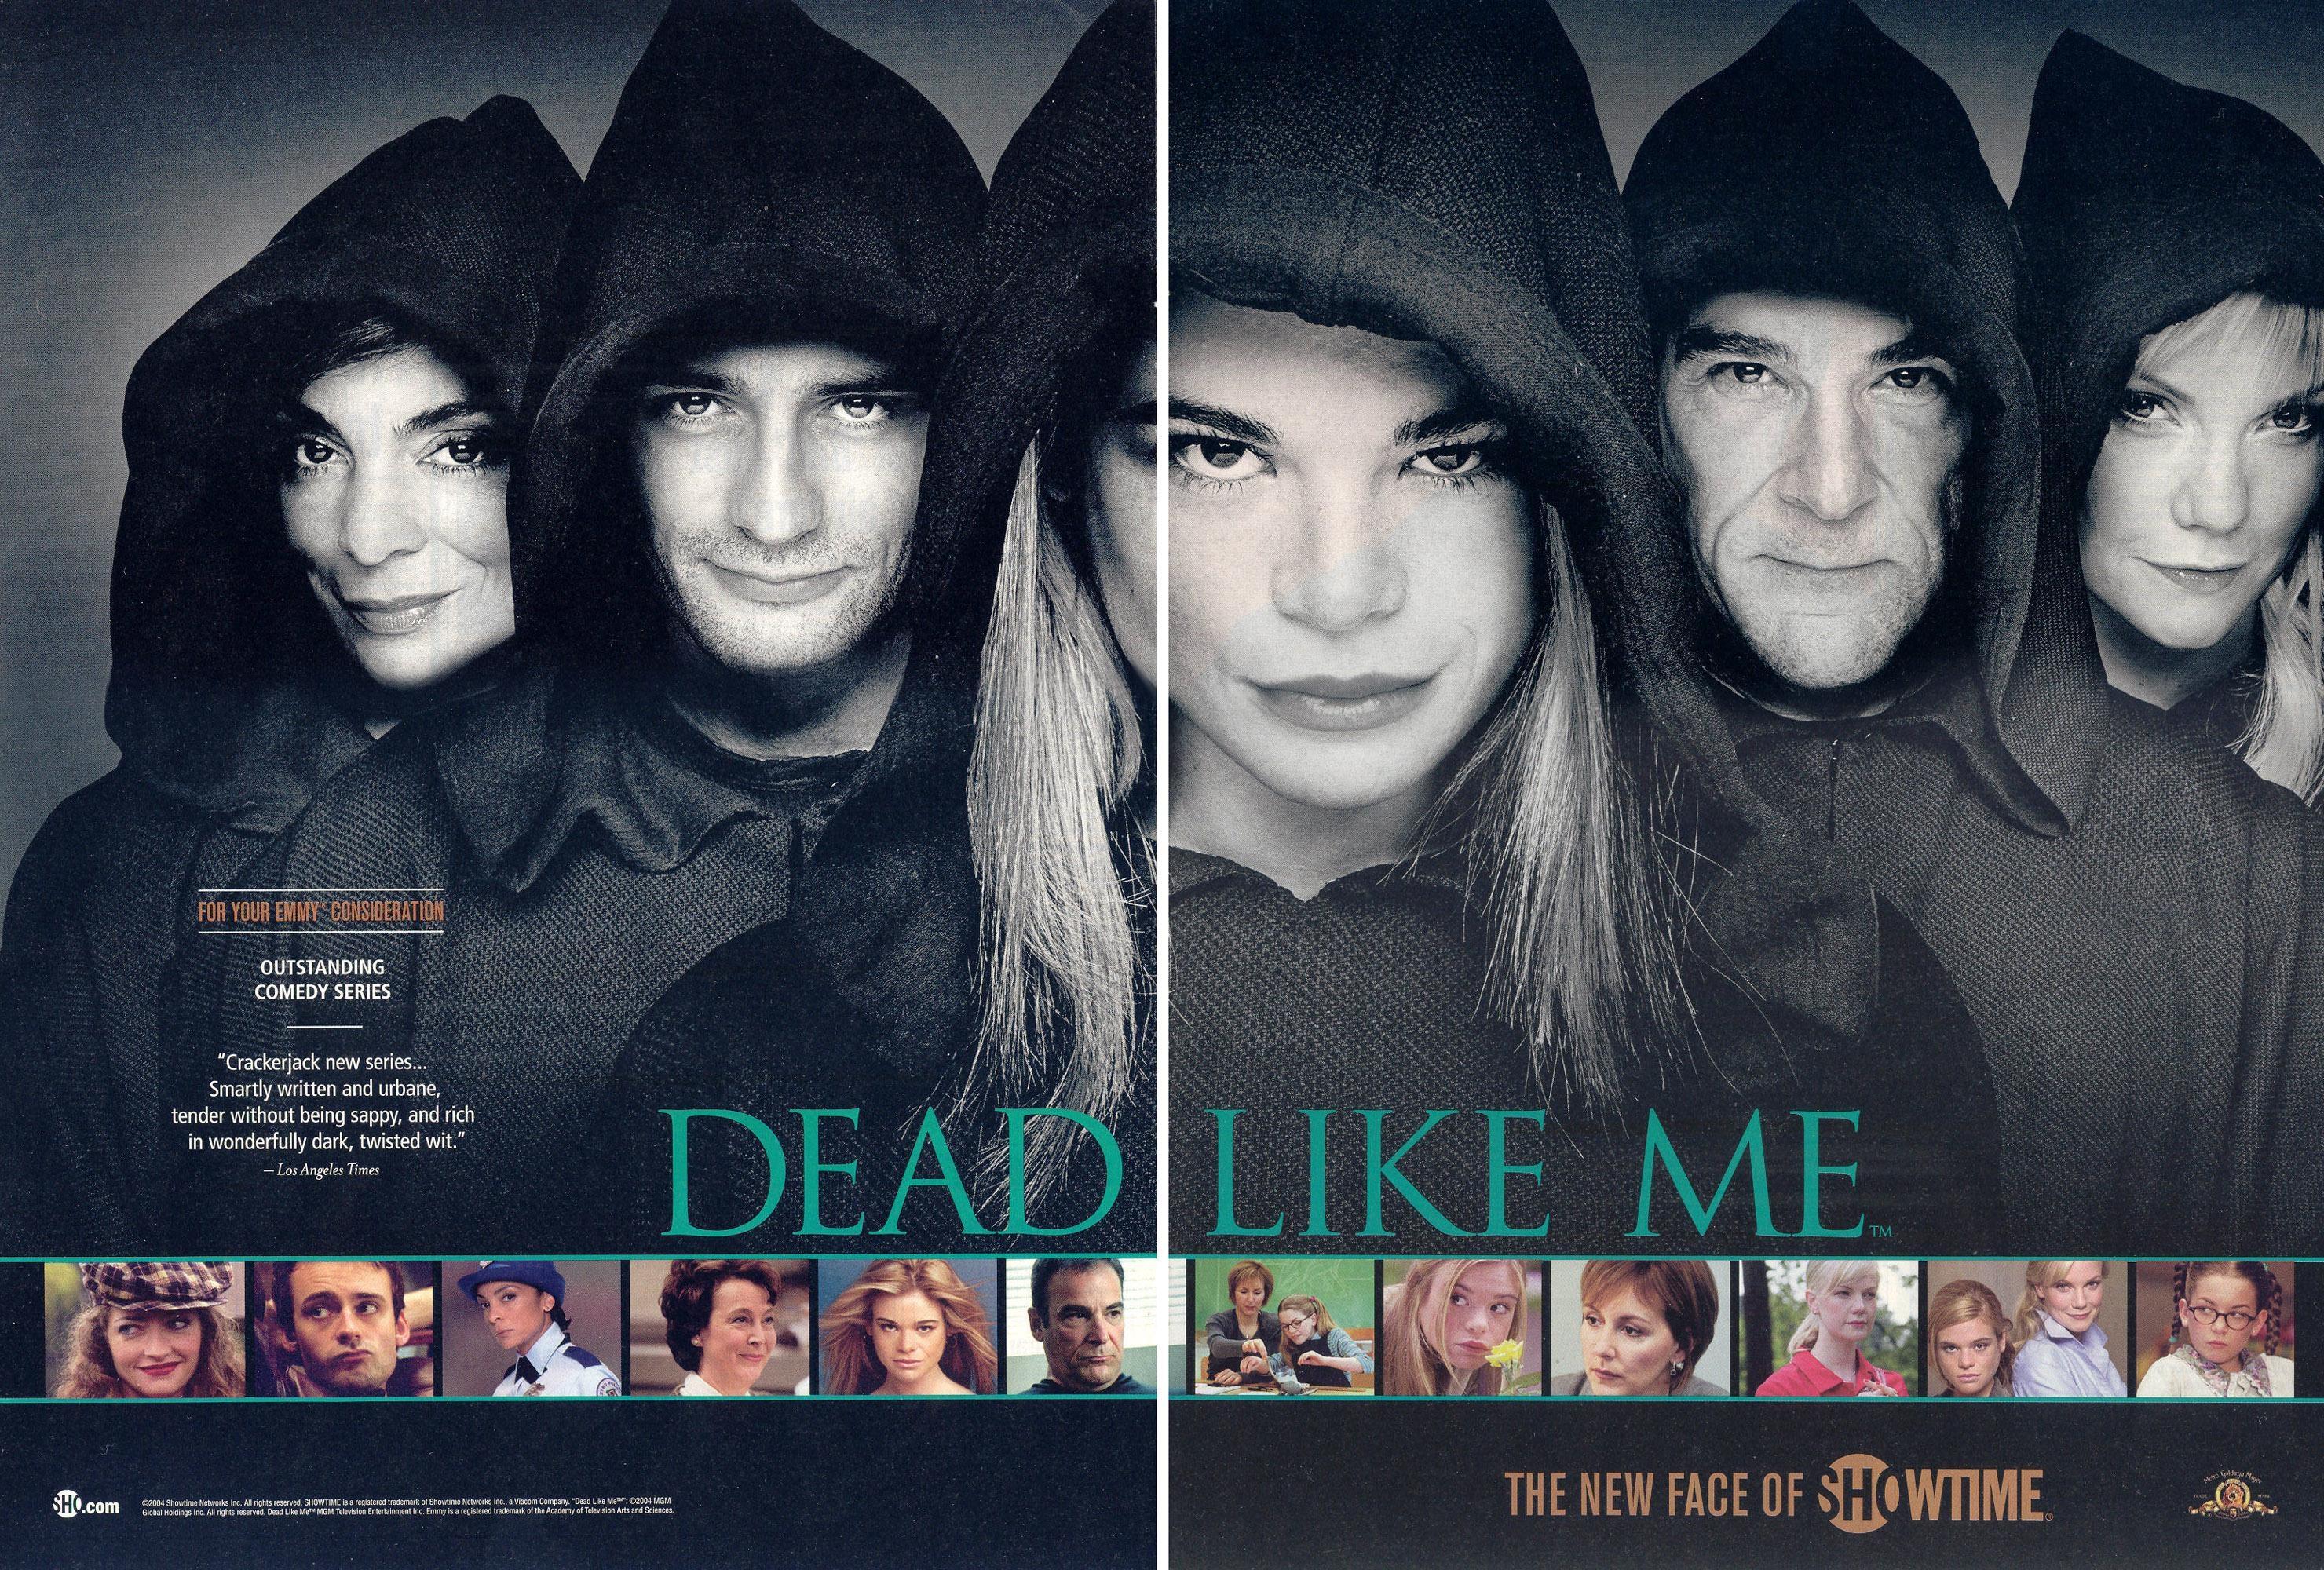 Постер фильма Мертвые, как я | Dead Like Me